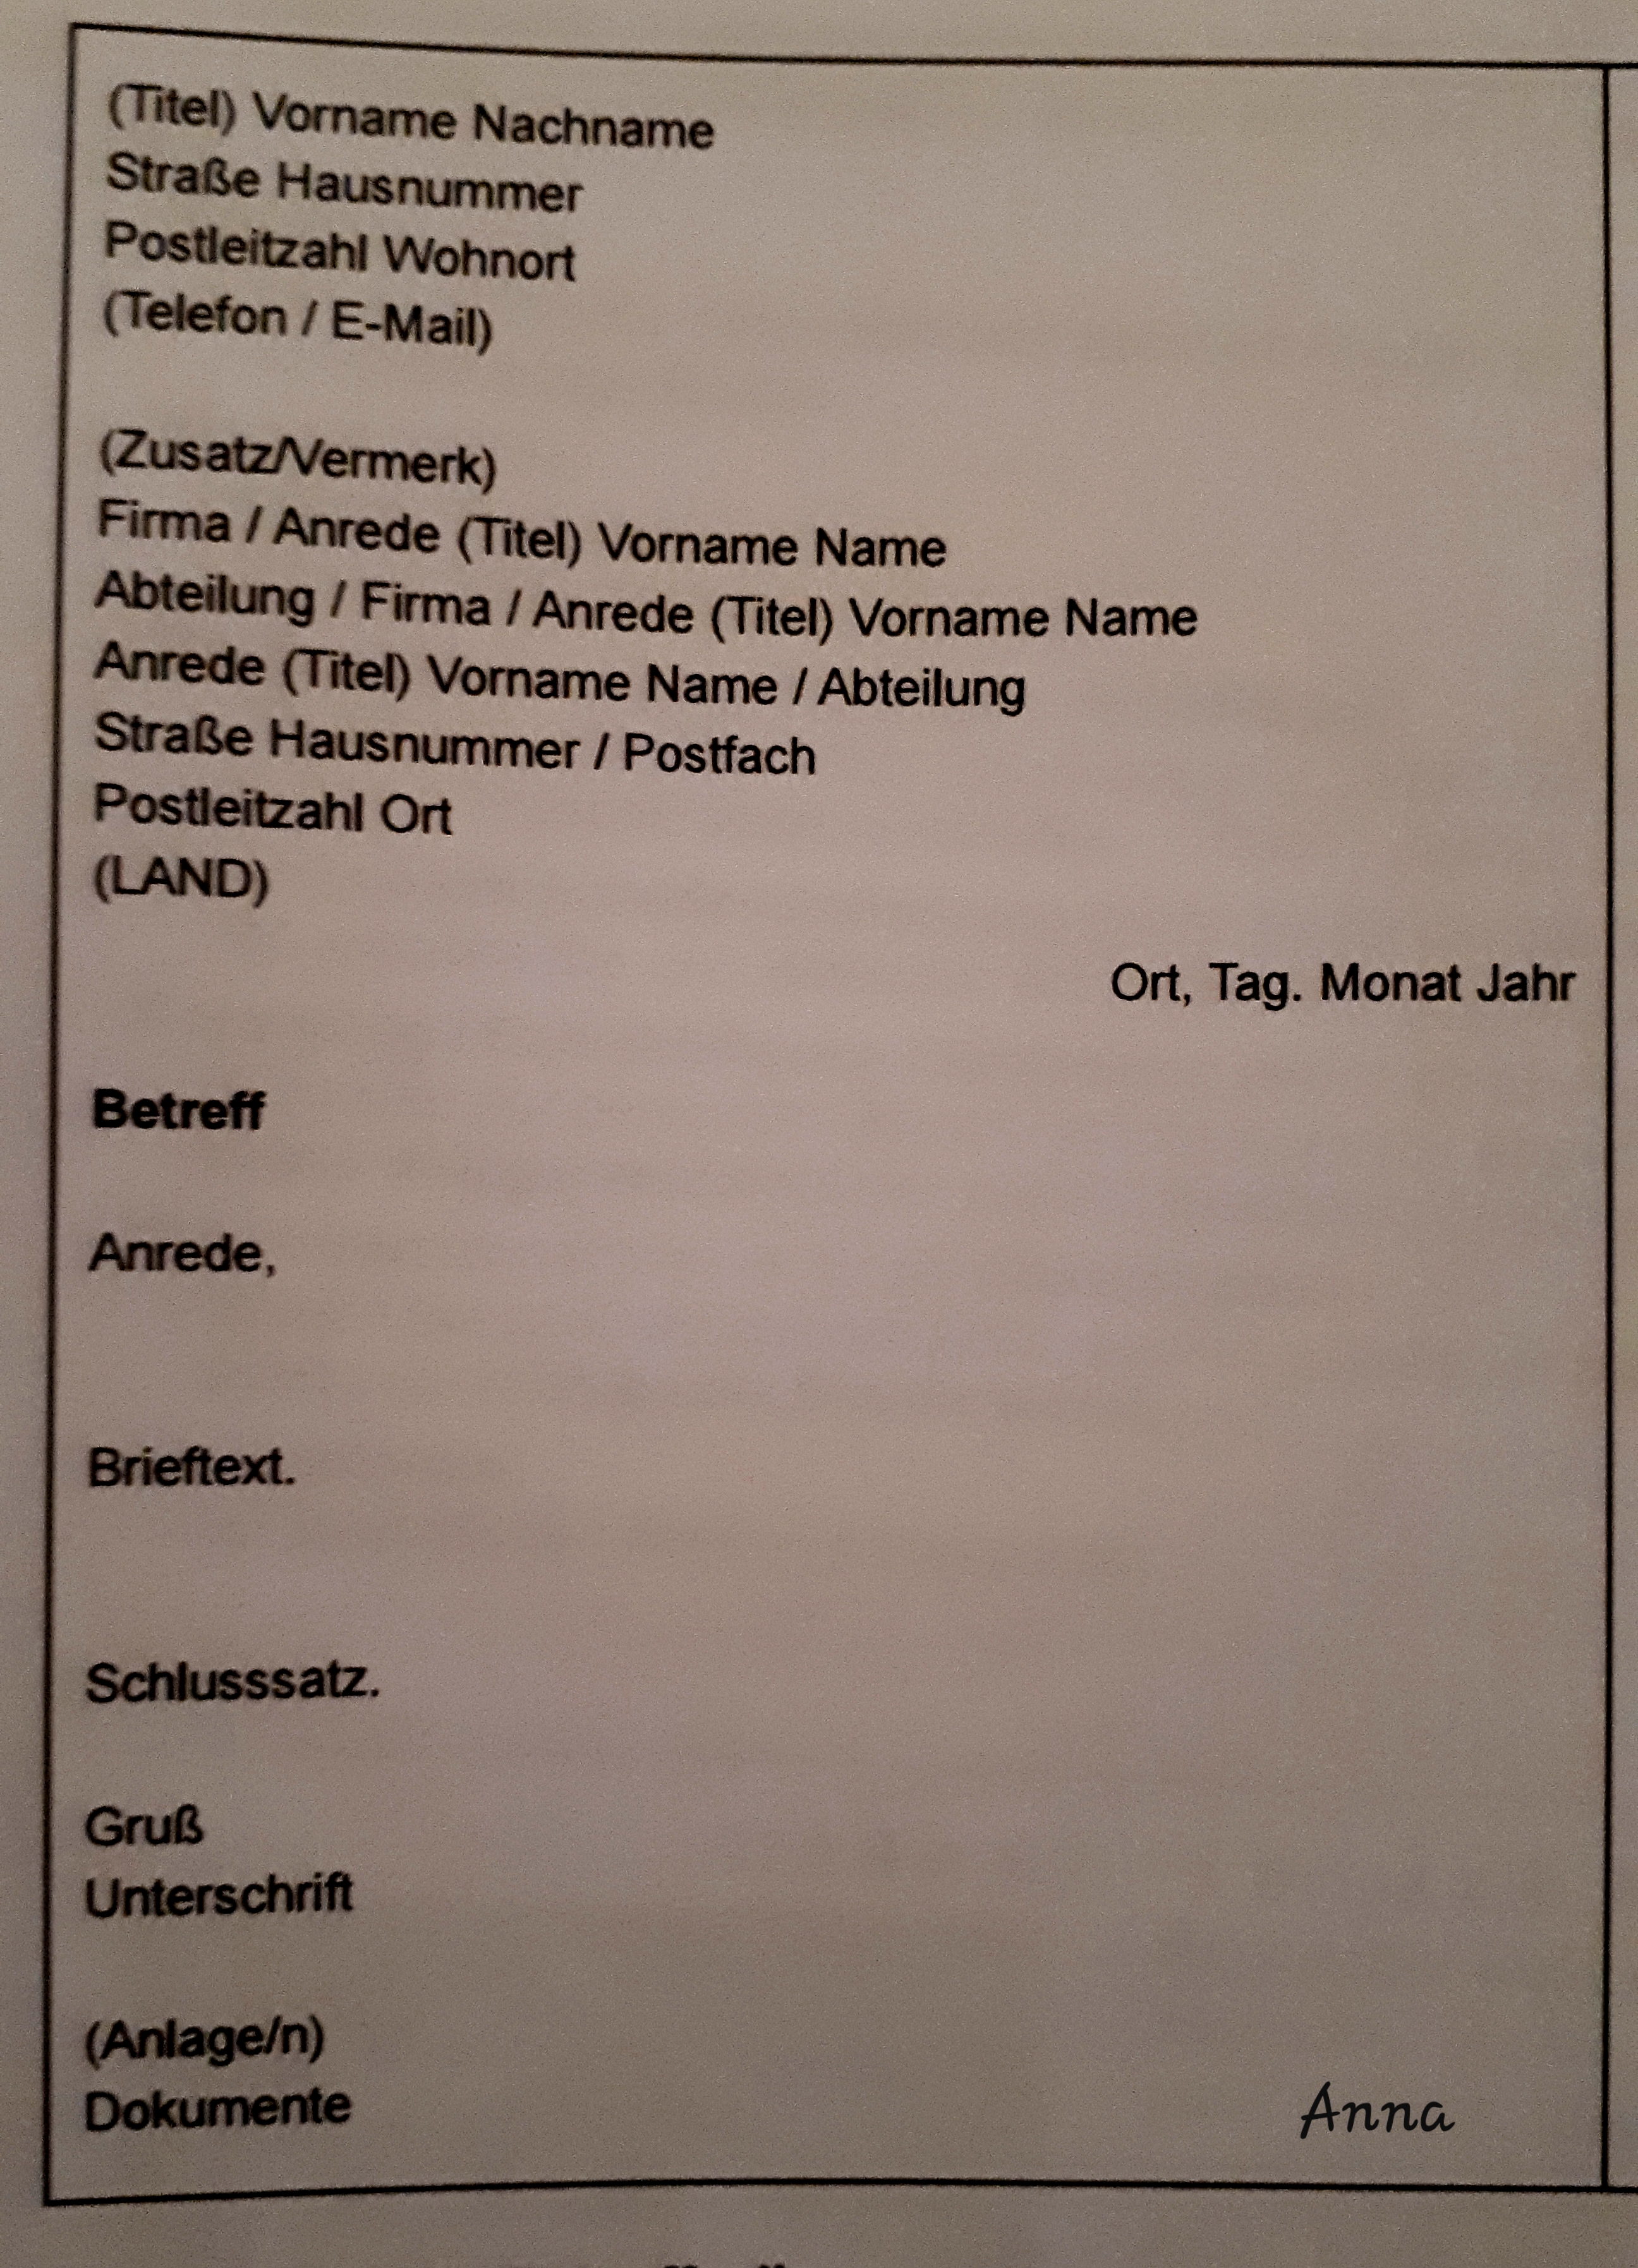 Contoh Surat Pendek Dalam Bahasa Jerman Kumpulan Surat Penting